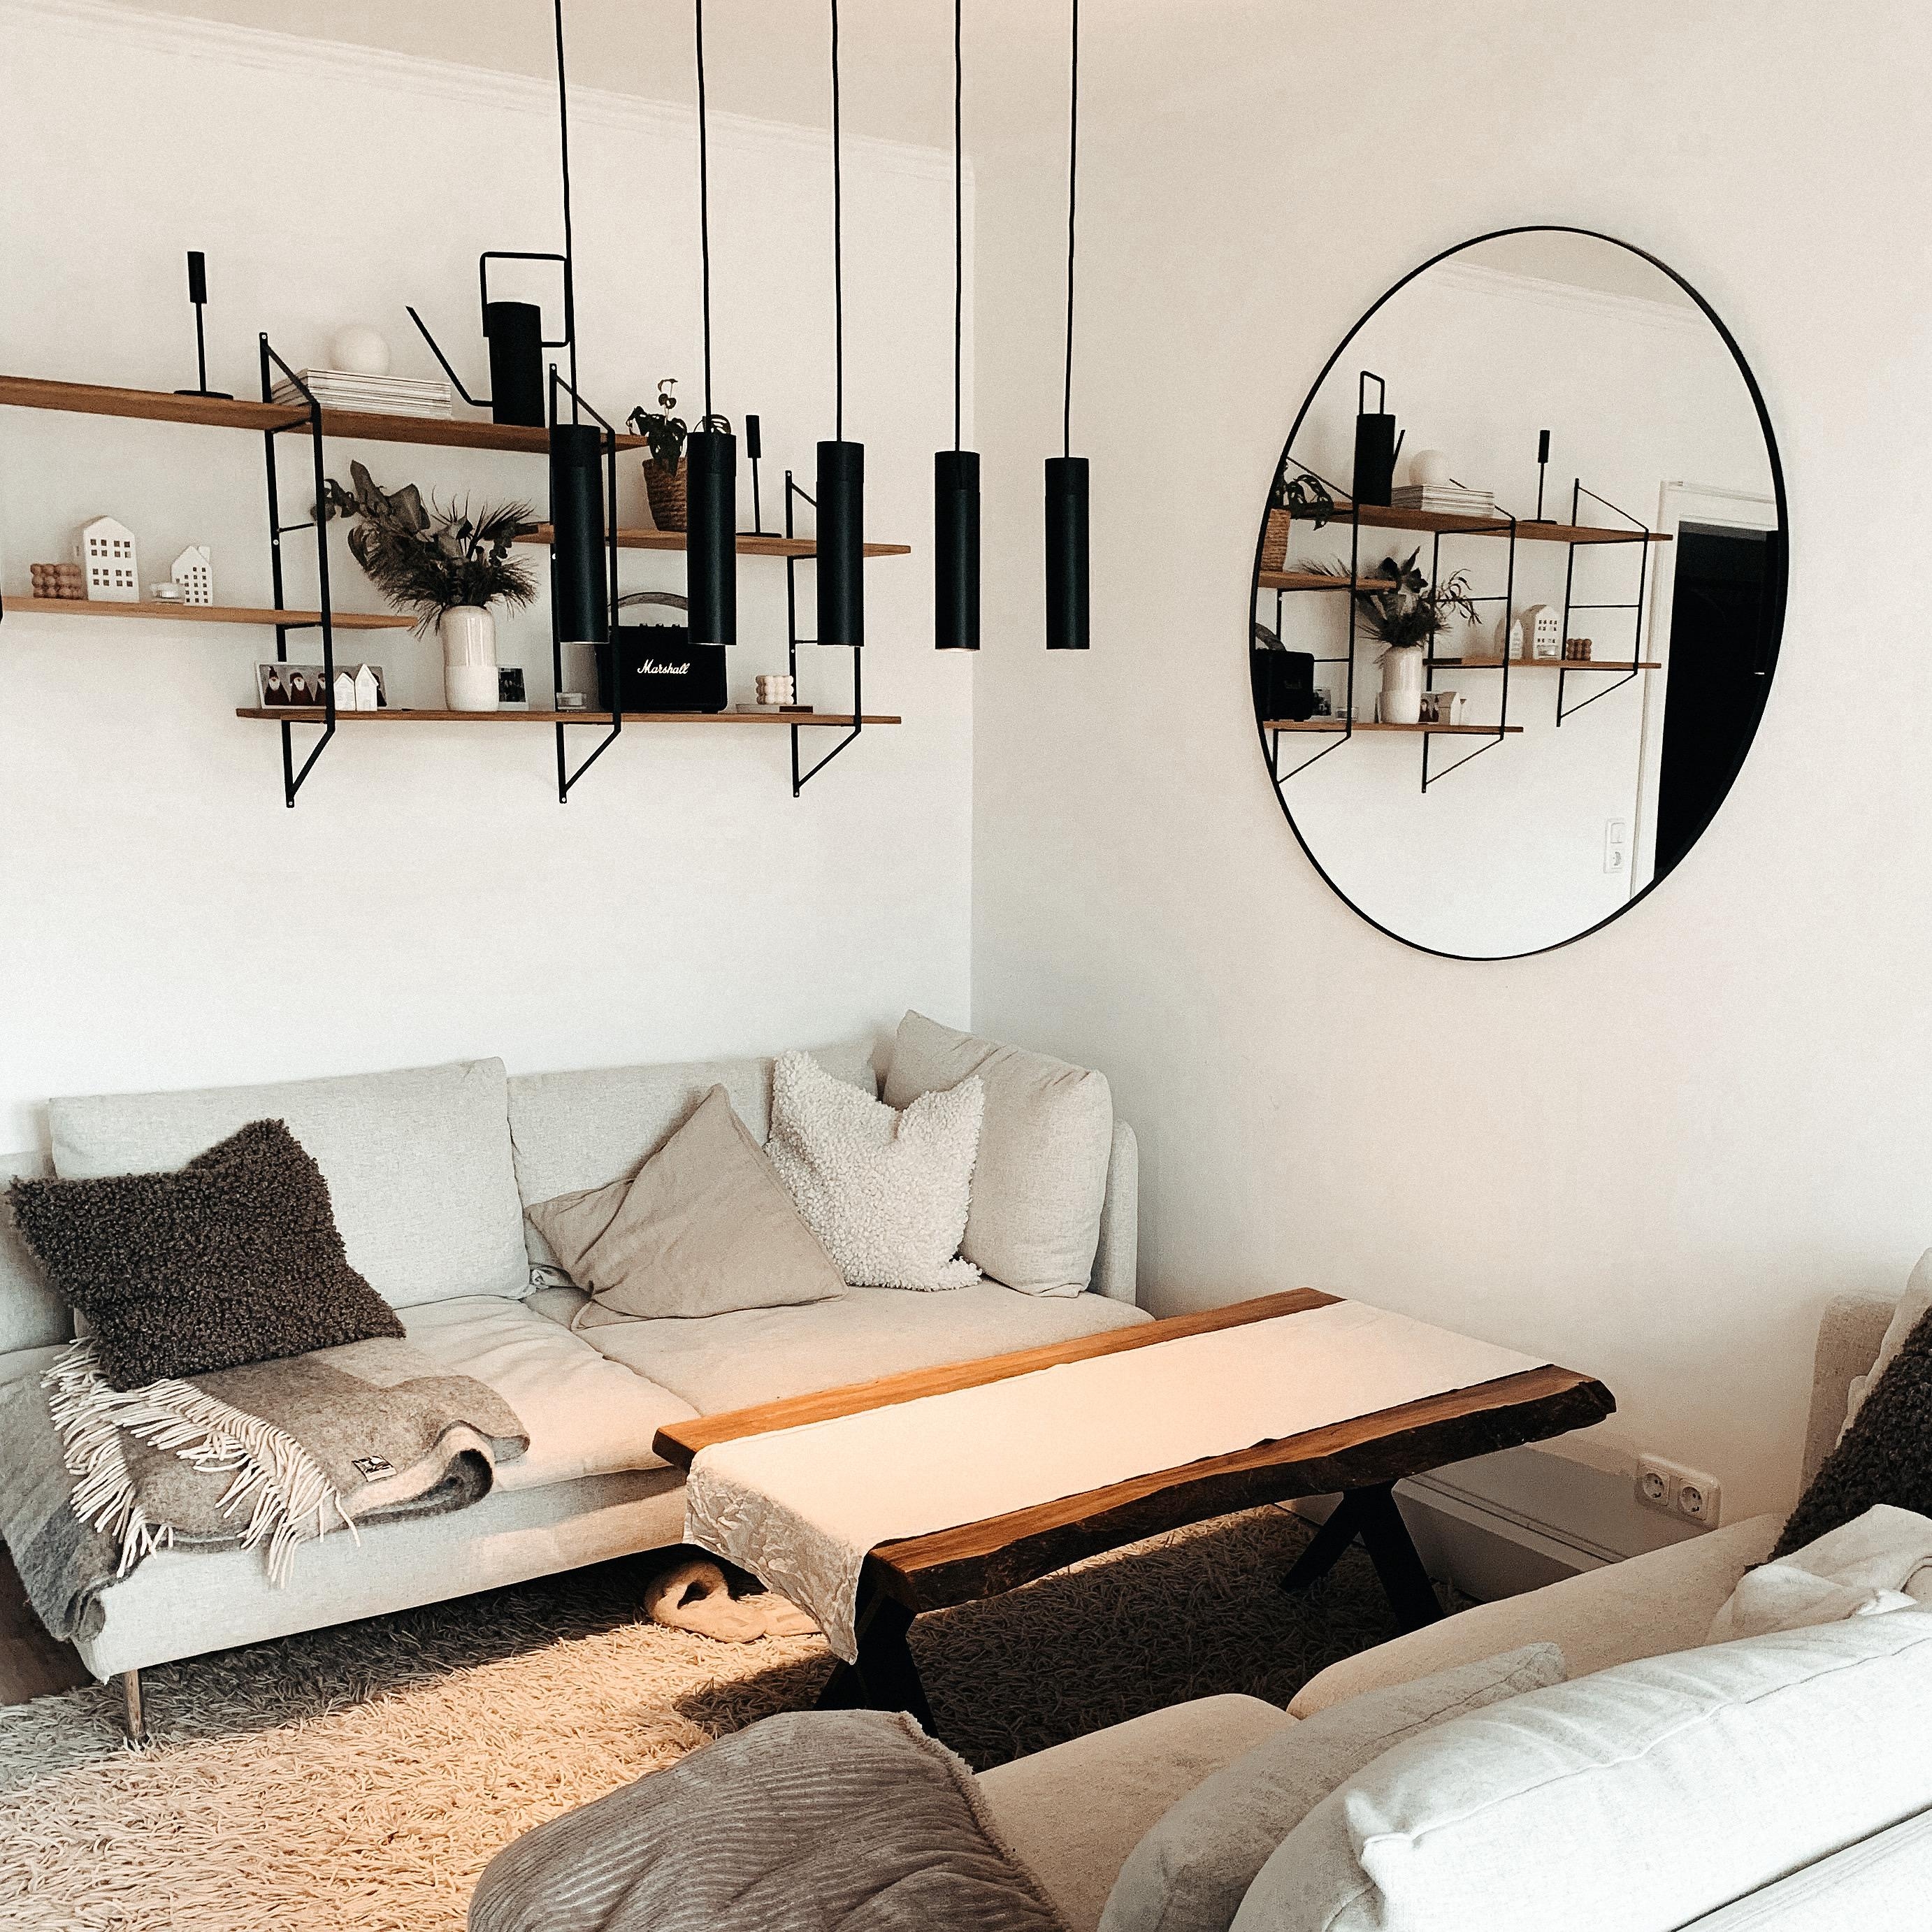 #wohnzimmer #zweisofas #couches #beige #schwarz #braun #skandi #cosyvibes